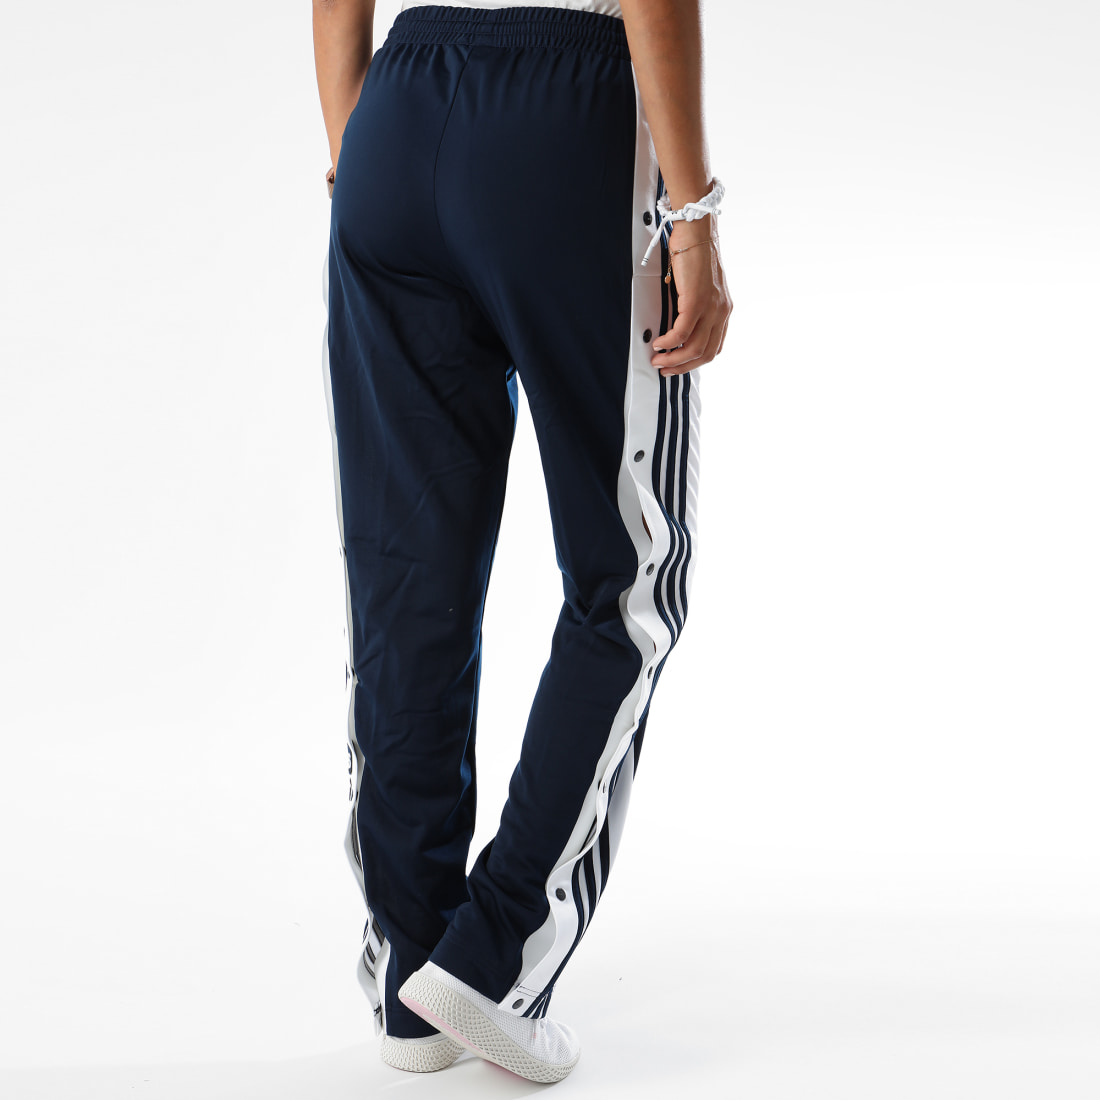 Adidas Originals - Pantalon Femme Adibreak DH3155 Bleu - LaBoutiqueOfficielle.com